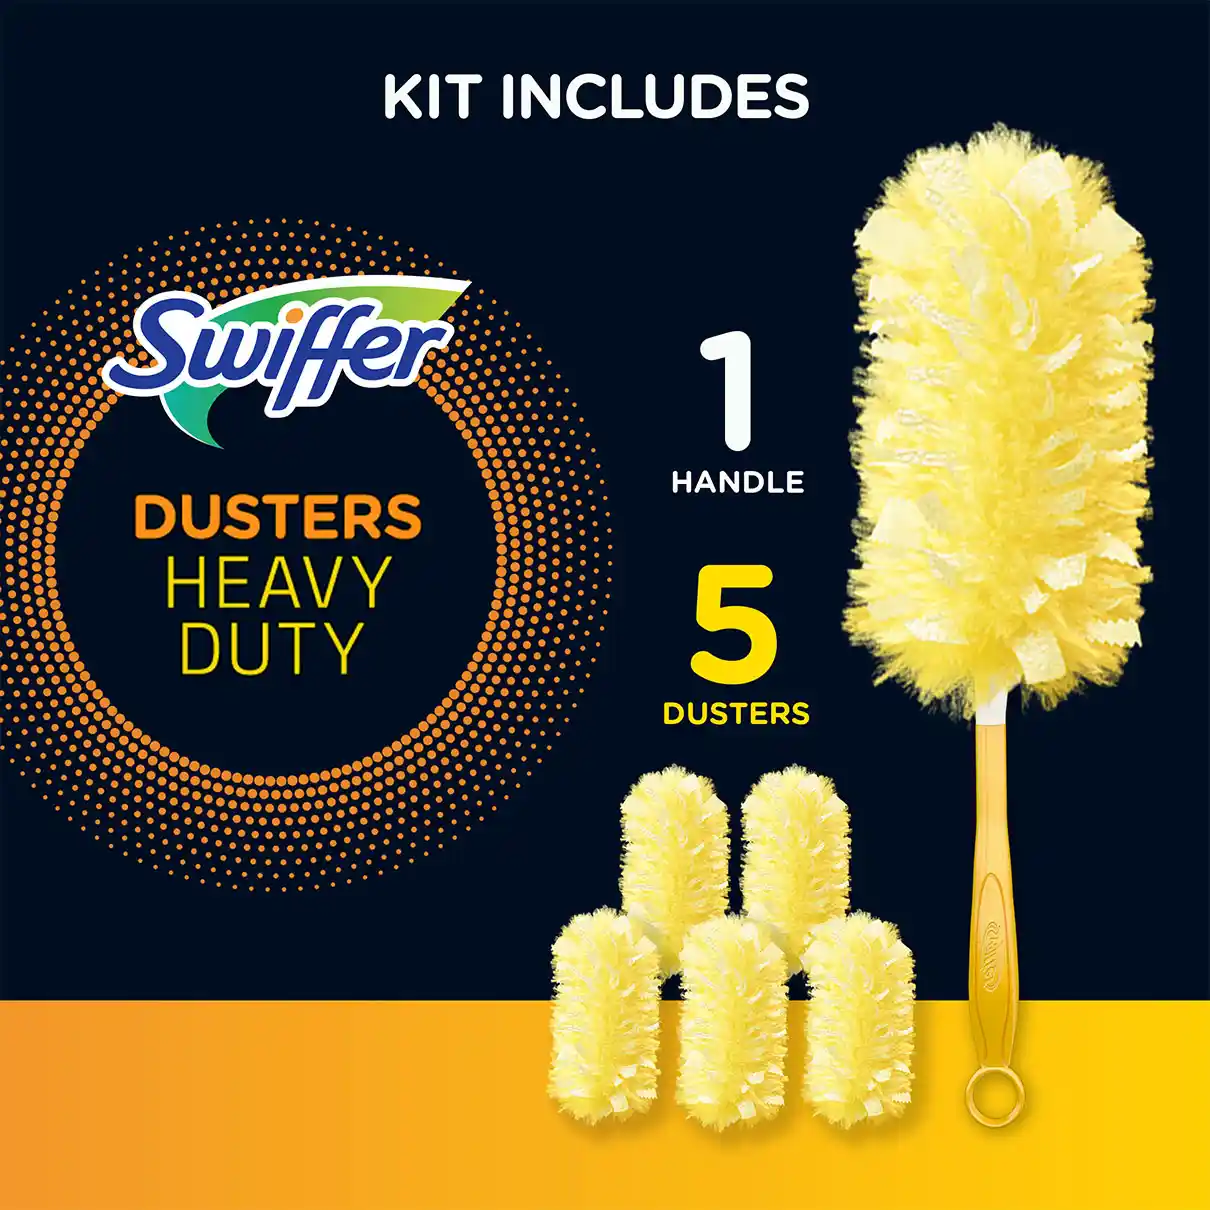 Swiffer Duster Dust Magnet Starter Kit XXL Refill 4 Piece/9 Piece Febreze